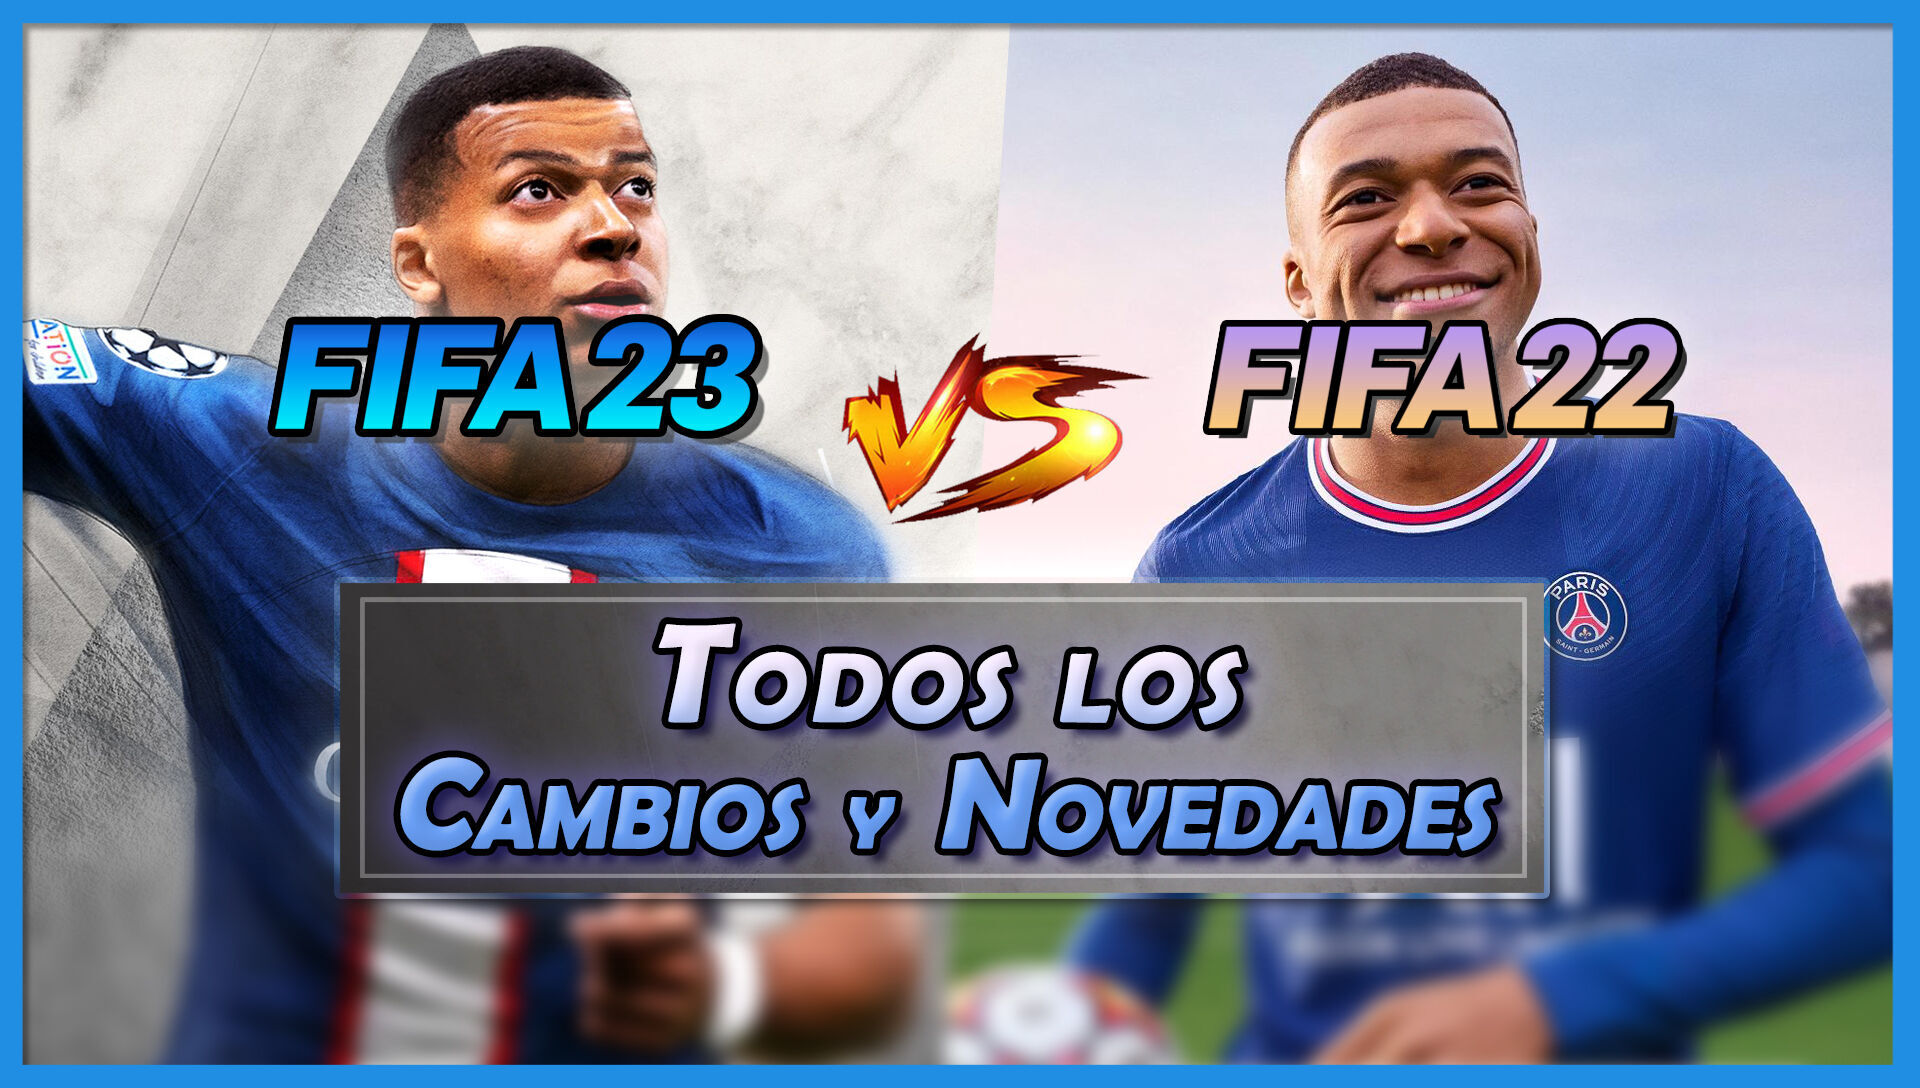 FIFA 23 vs FIFA 22: TODAS las novedades, cambios y diferencias principales